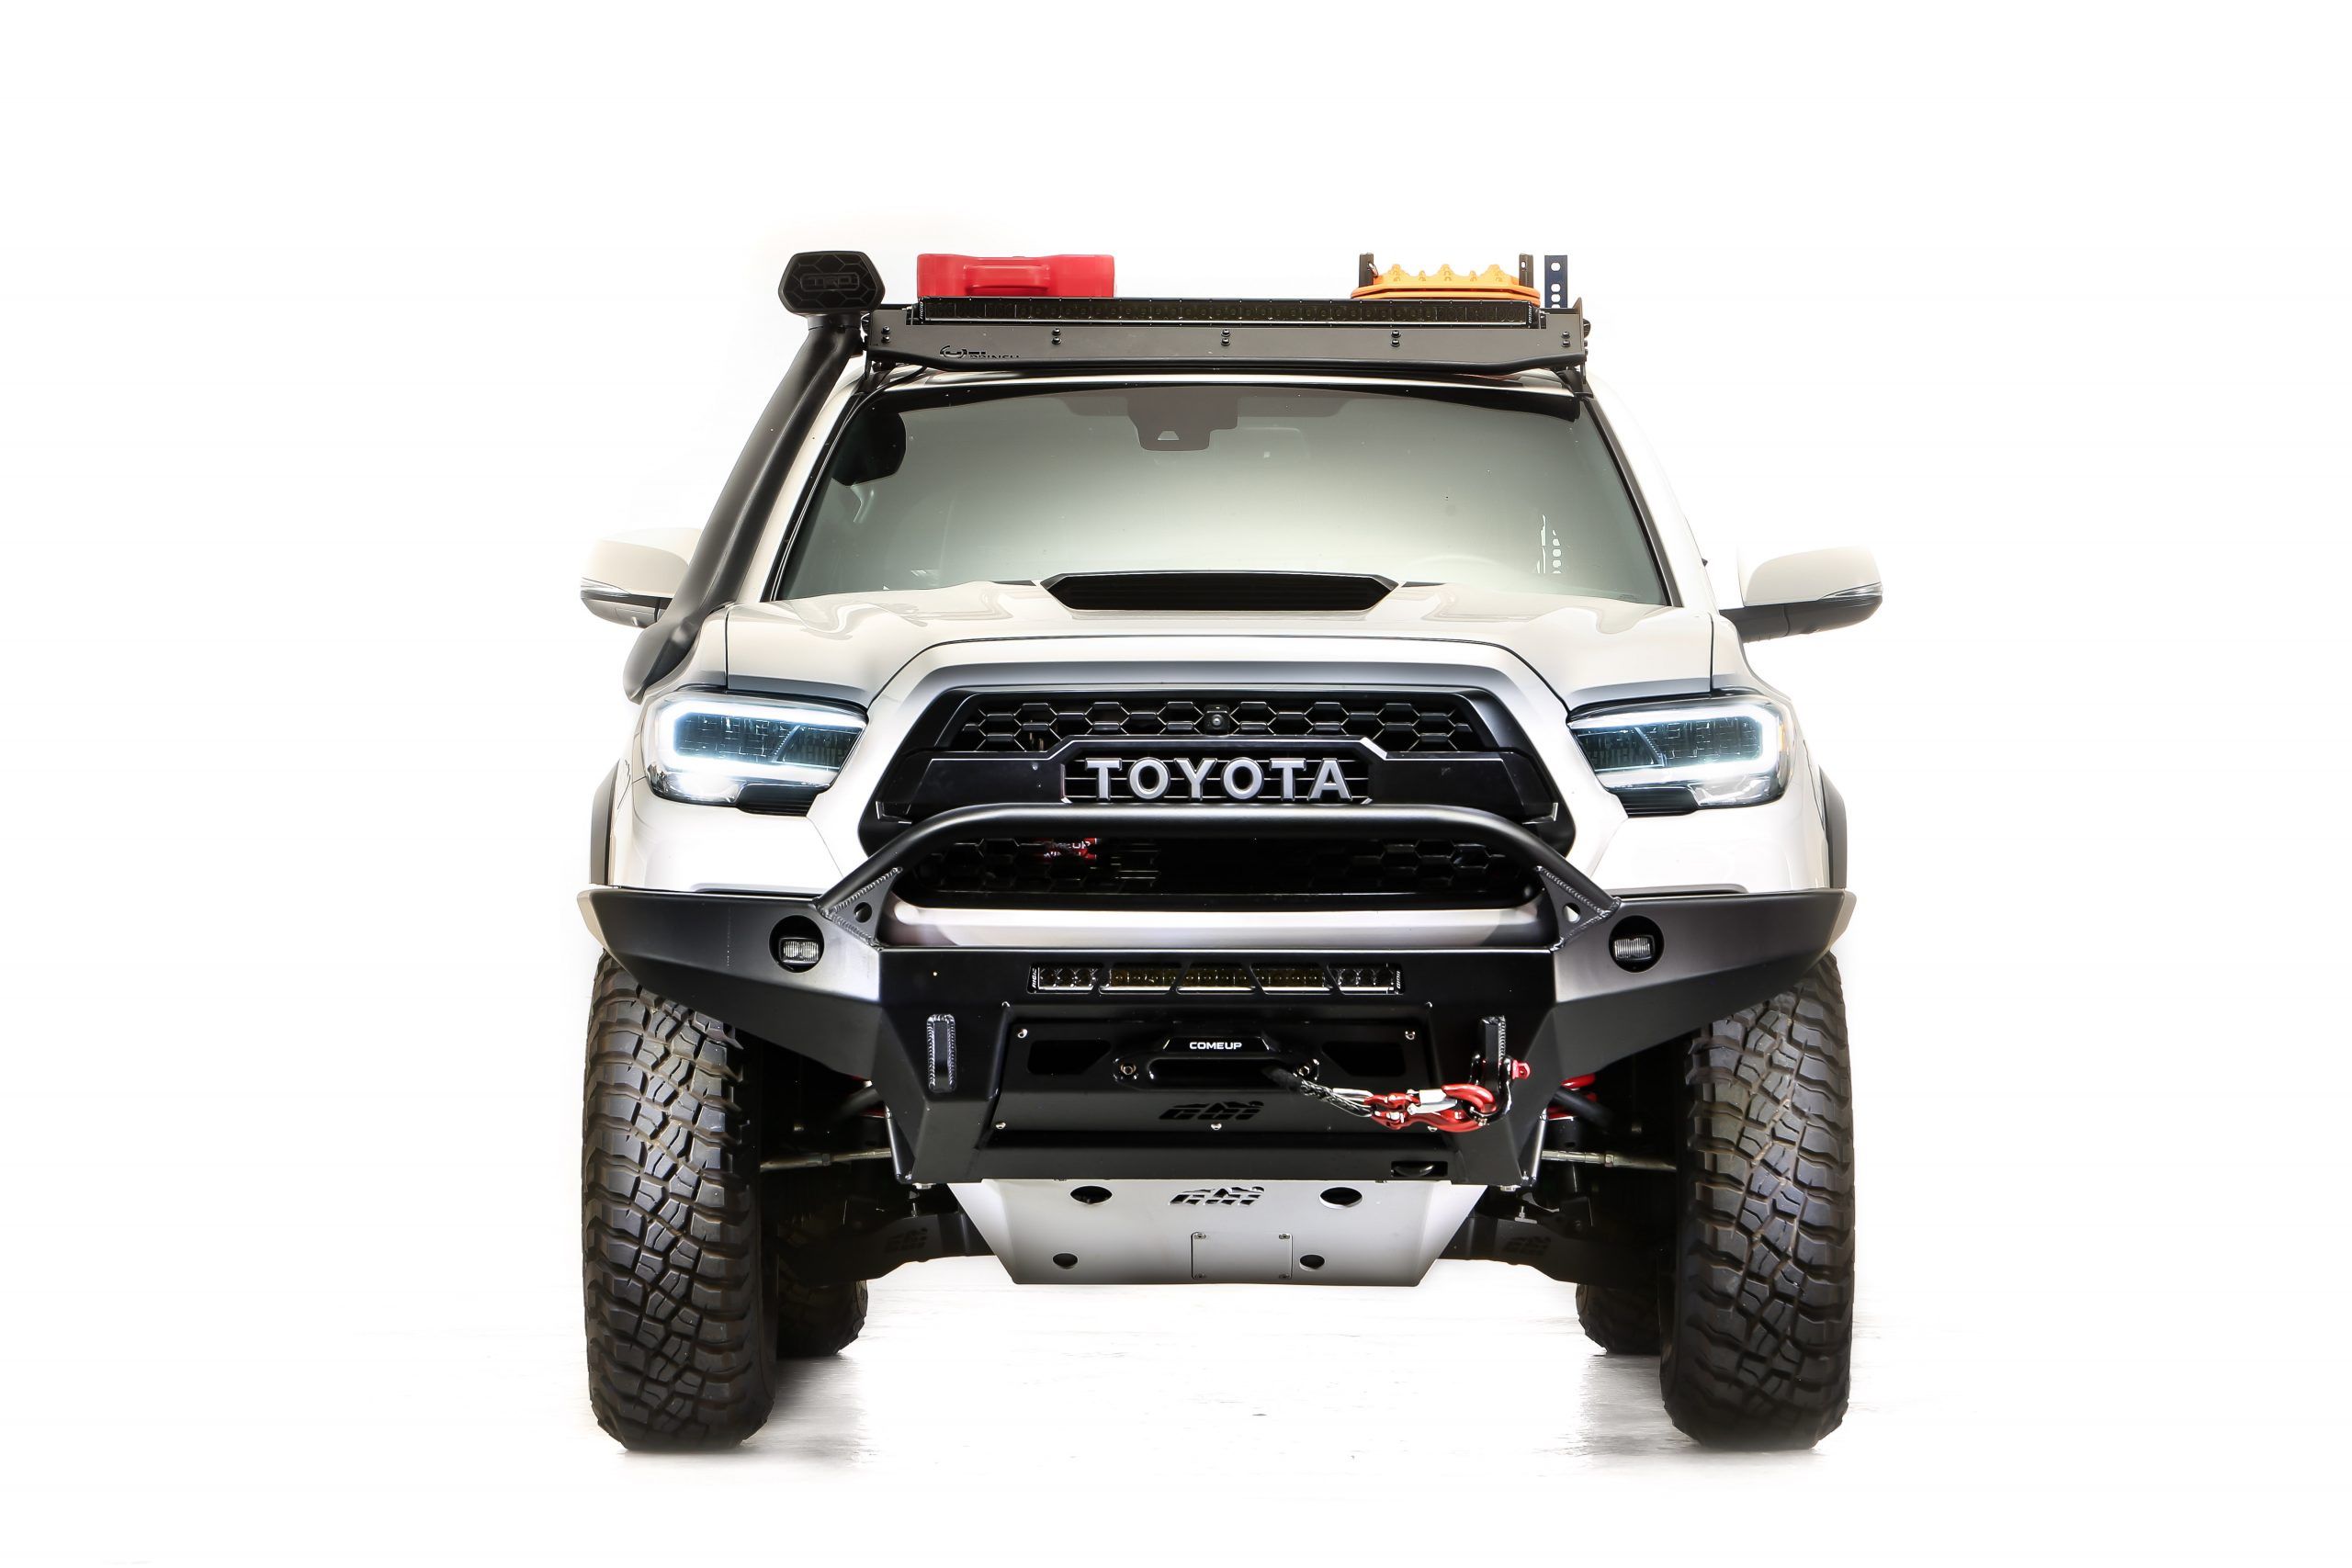 2020 Toyota Owner Magazine Overland-Ready Tacoma 4WD